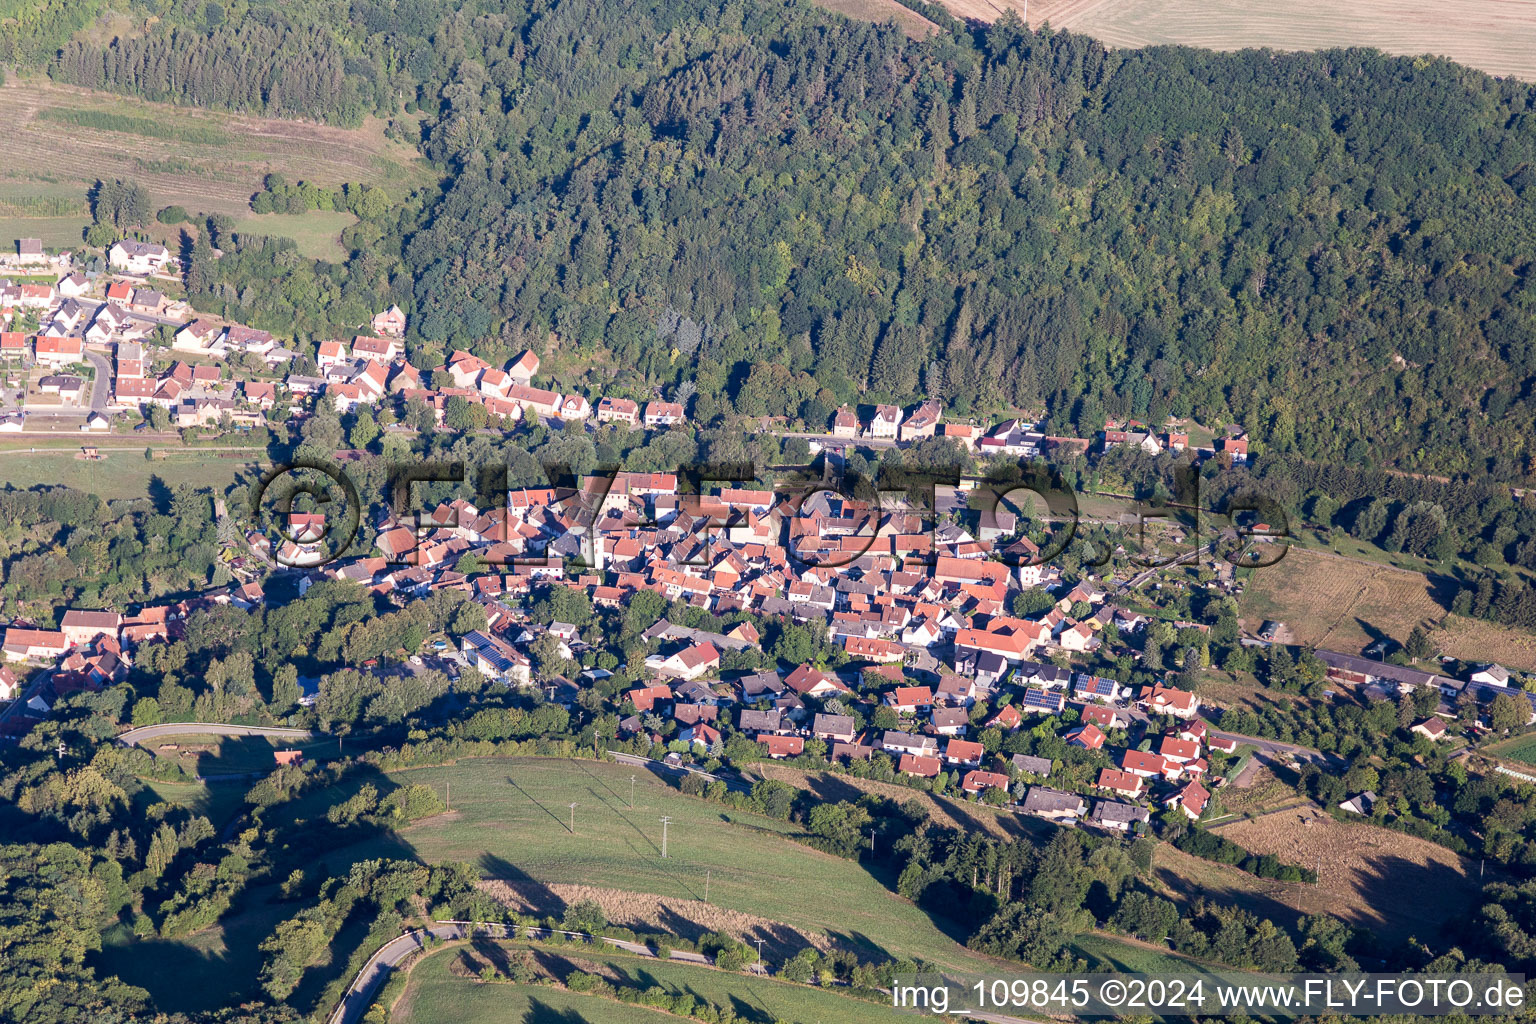 Vue aérienne de Des zones forestières et des zones forestières entourent la zone d'habitation du village à Odenbach dans le département Rhénanie-Palatinat, Allemagne